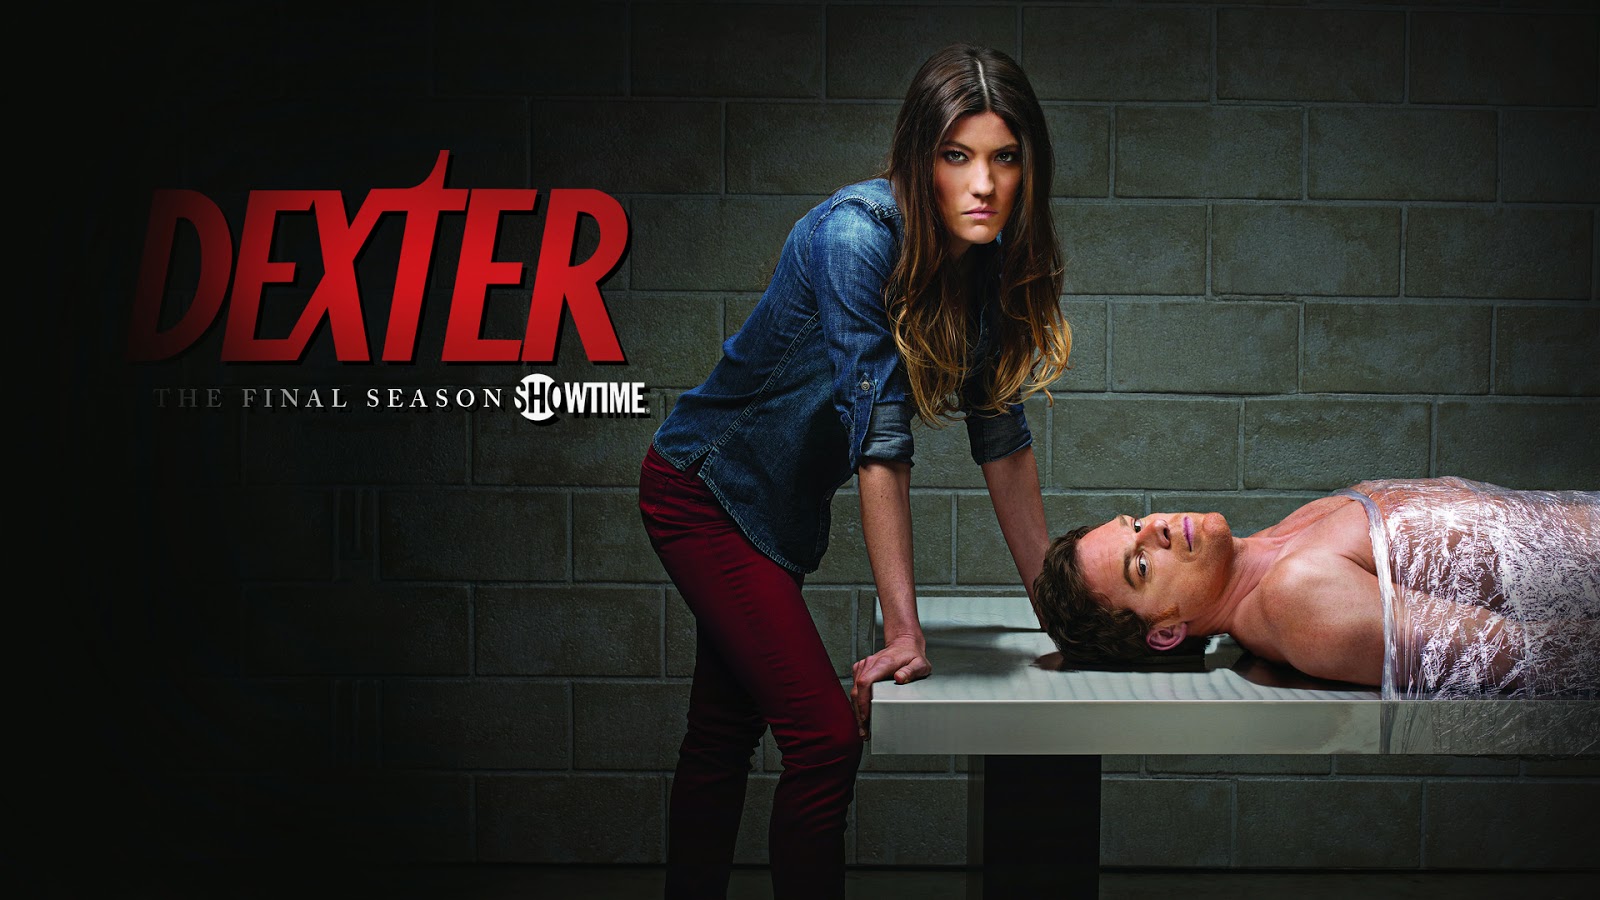 ... in Little Black Dress at “Dexter” Season 8 Premiere ~ Celebs Next